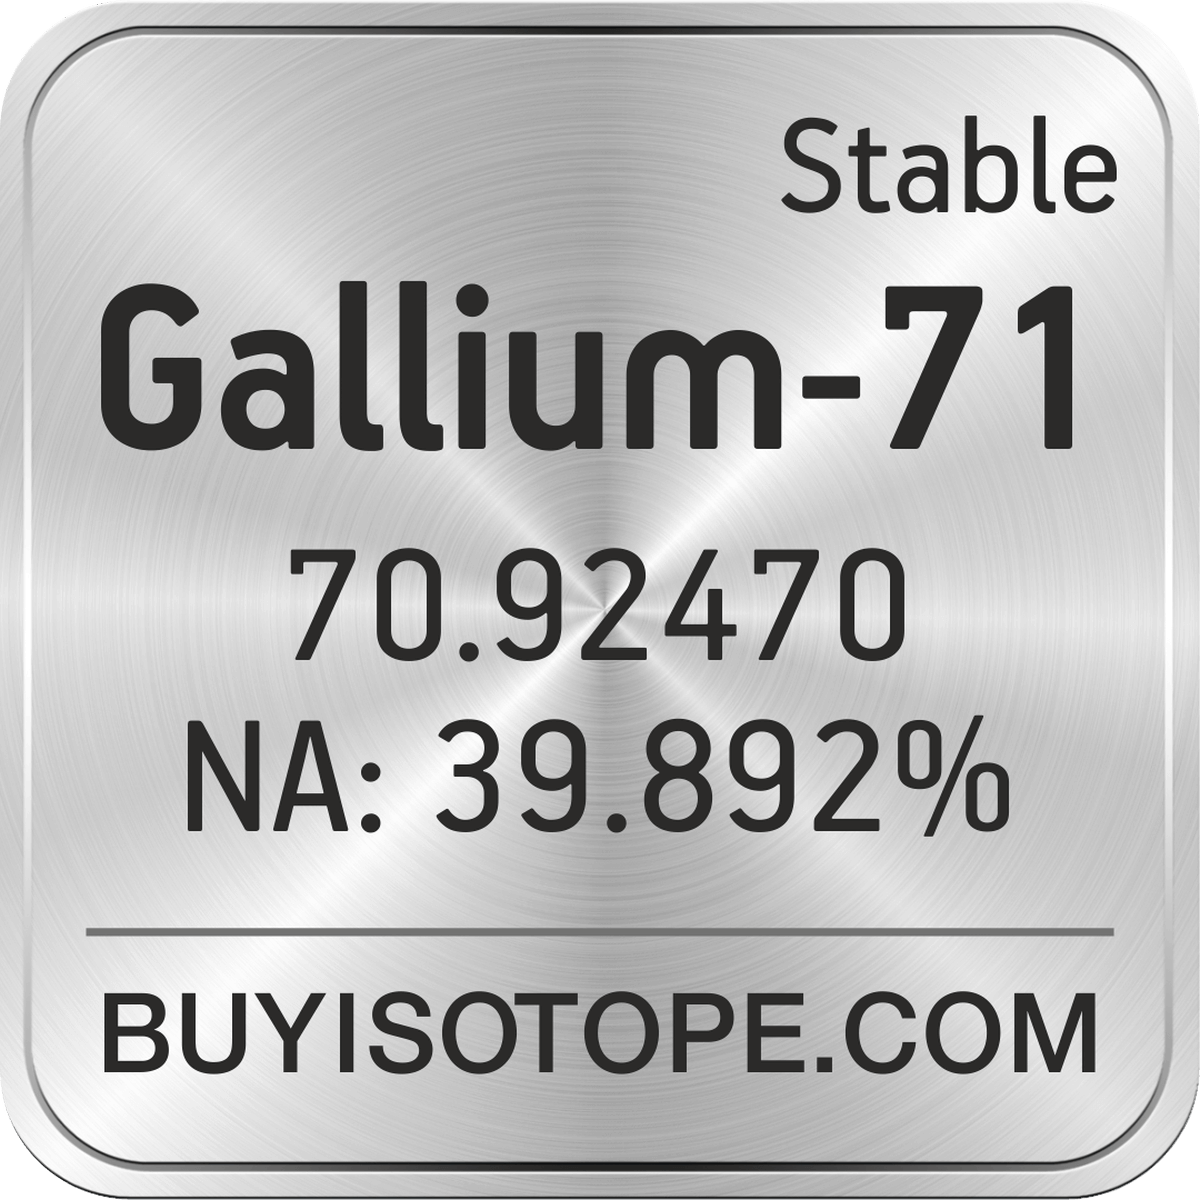 gallium periodic table